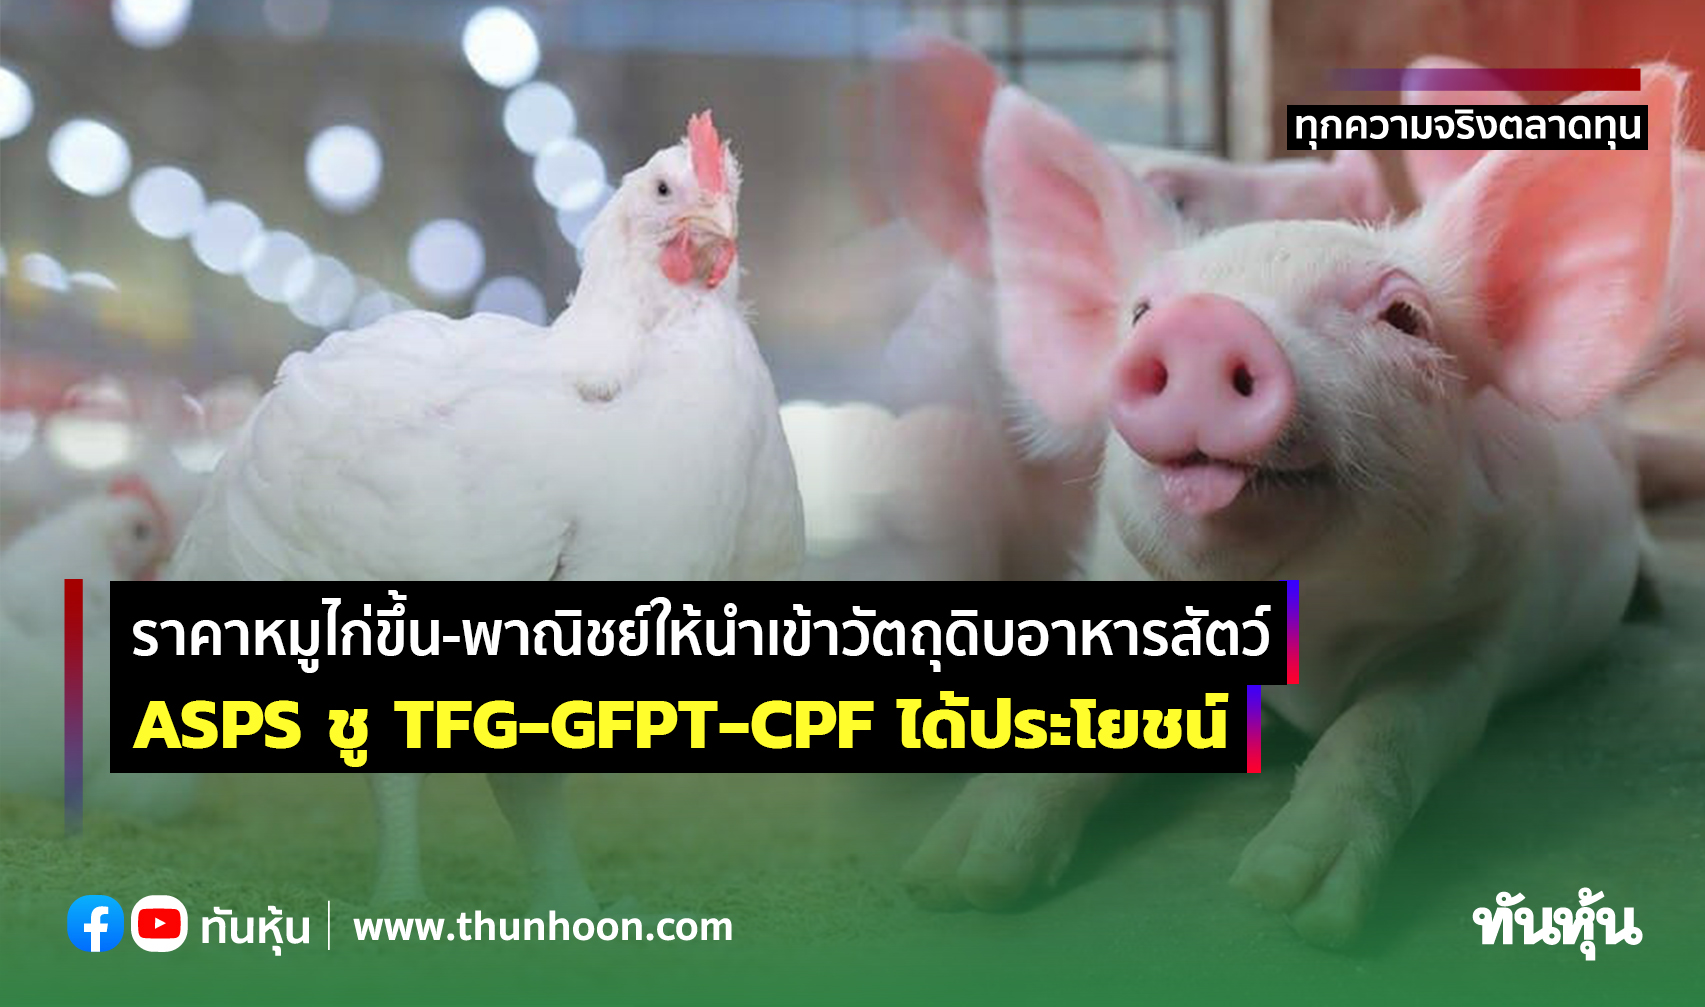 ราคาหมูไก่ขึ้น-พาณิชย์ให้นําเข้าวัตถุดิบอาหารสัตว์  ASPS ชู TFG-GFPT-CPF ได้ประโยชน์